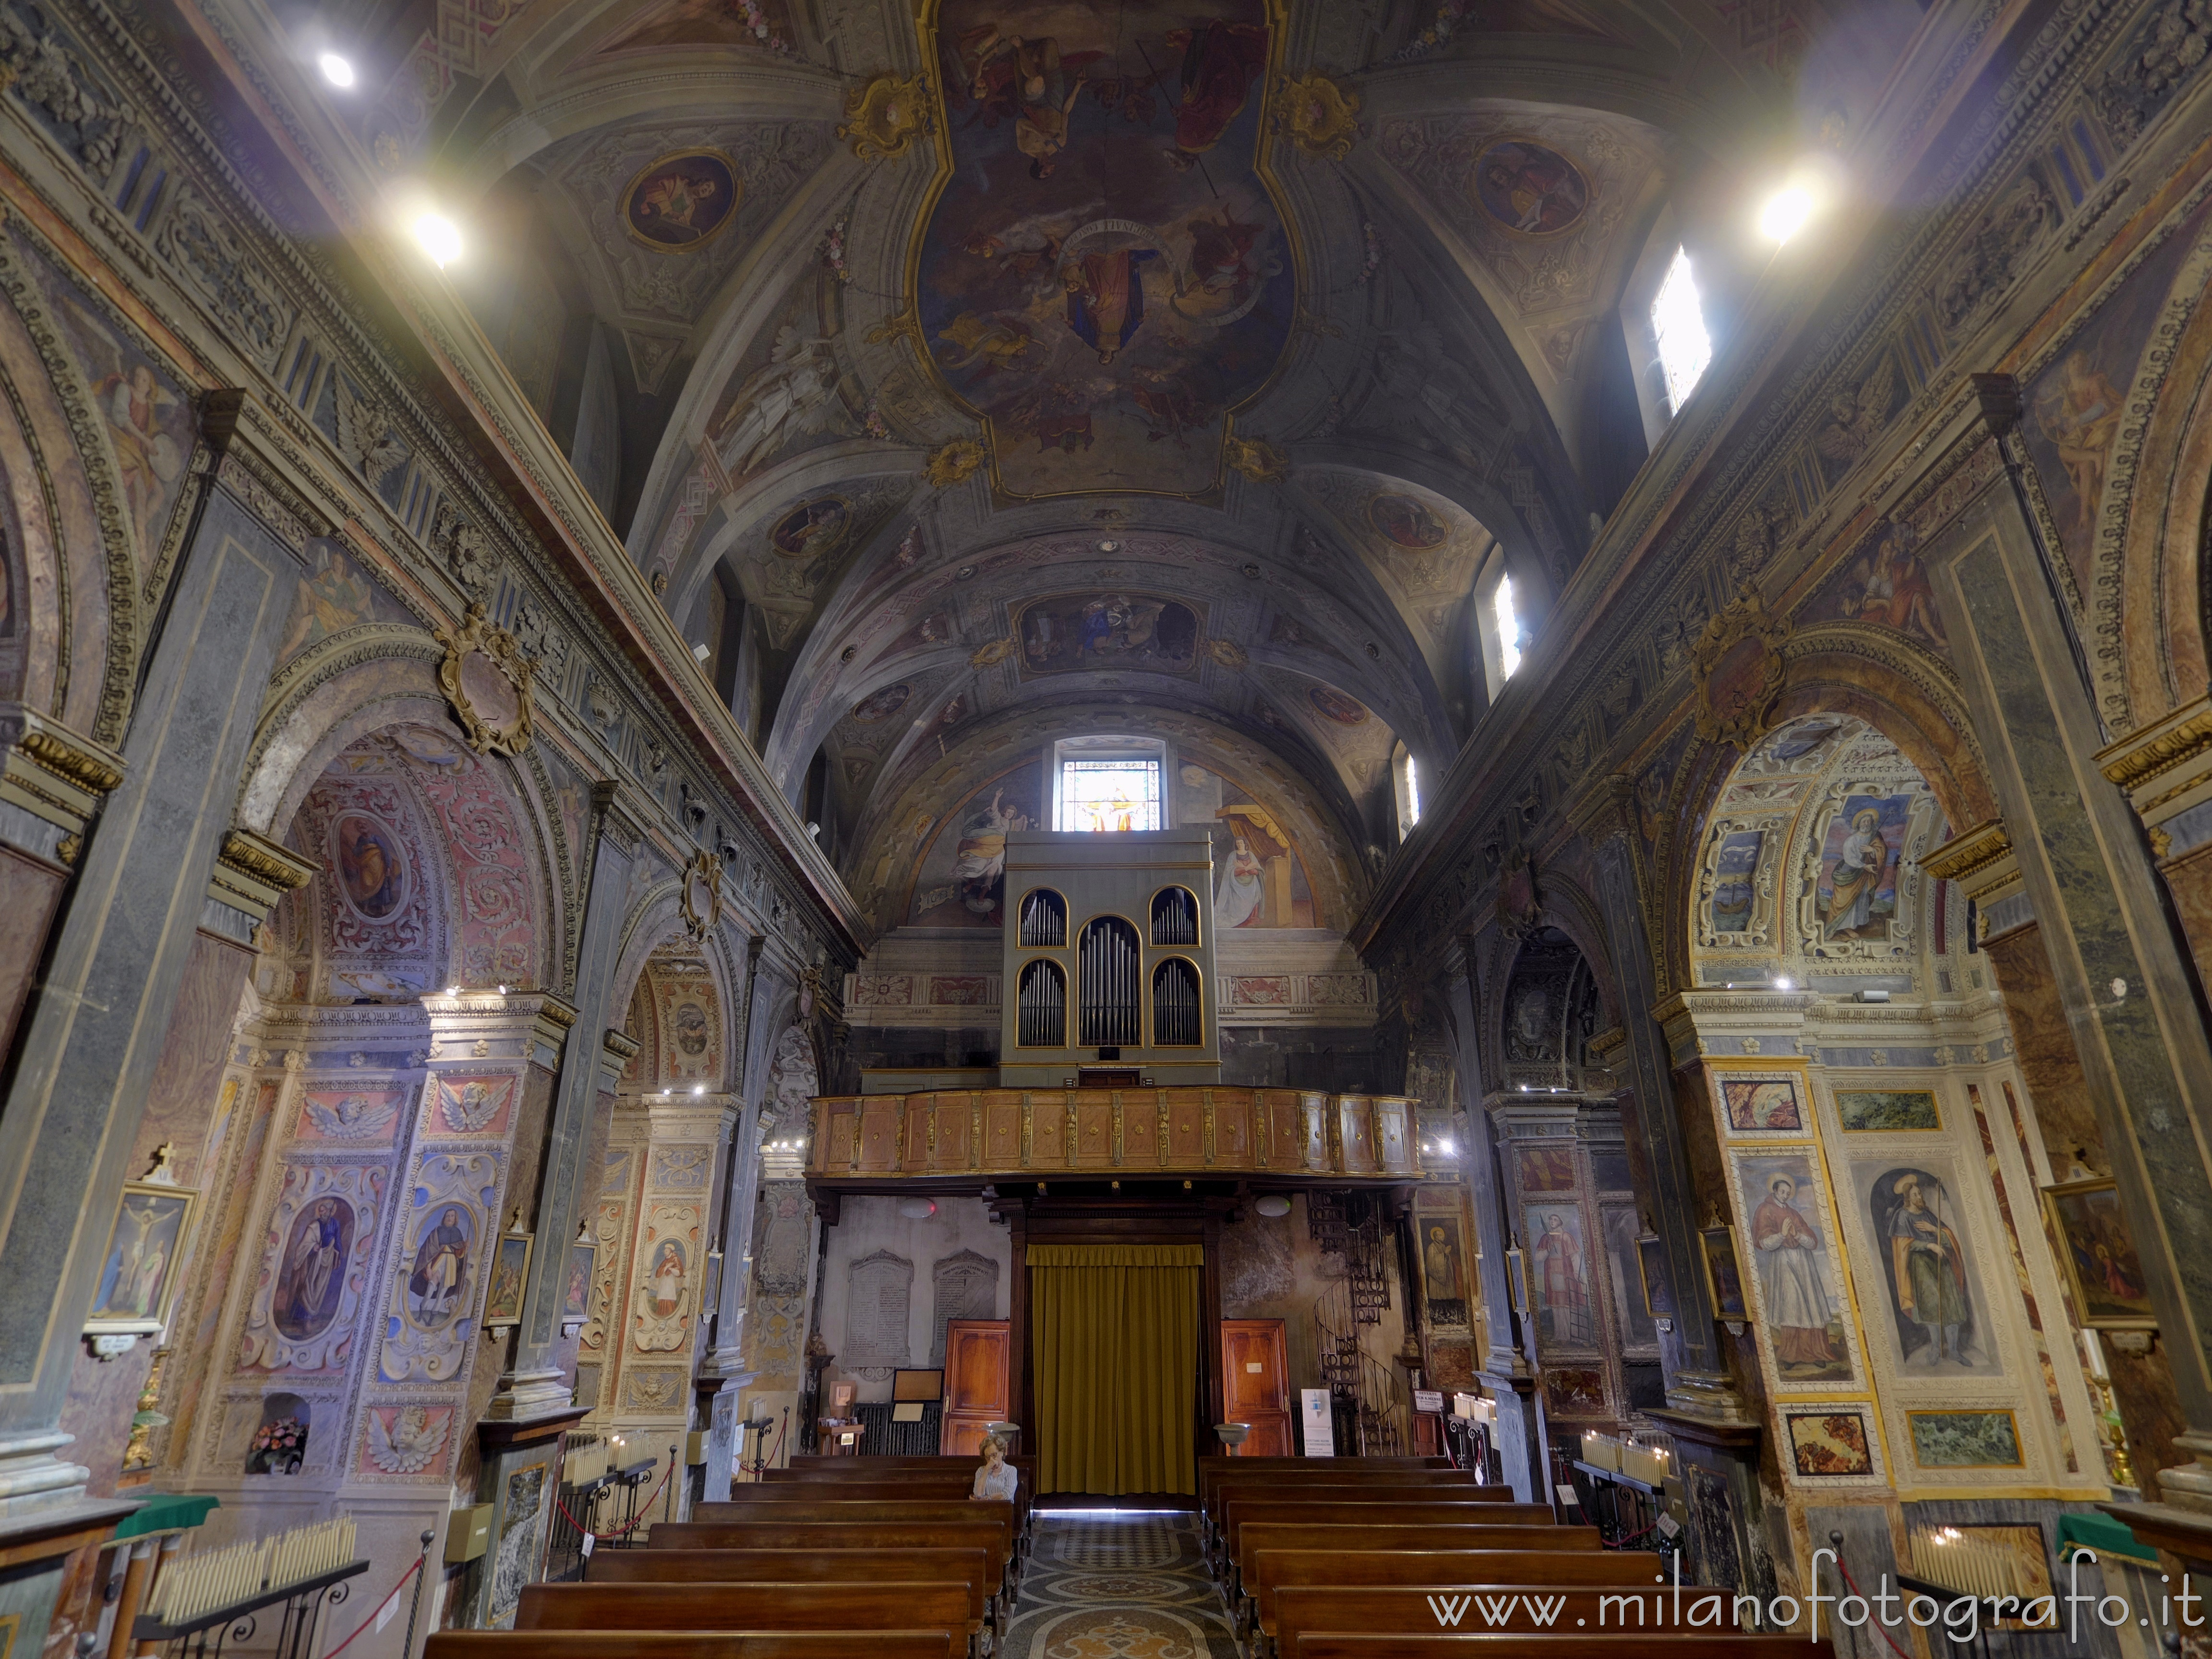 Biella (Italy): Nave of the Church of the Holy Trinity - Biella (Italy)